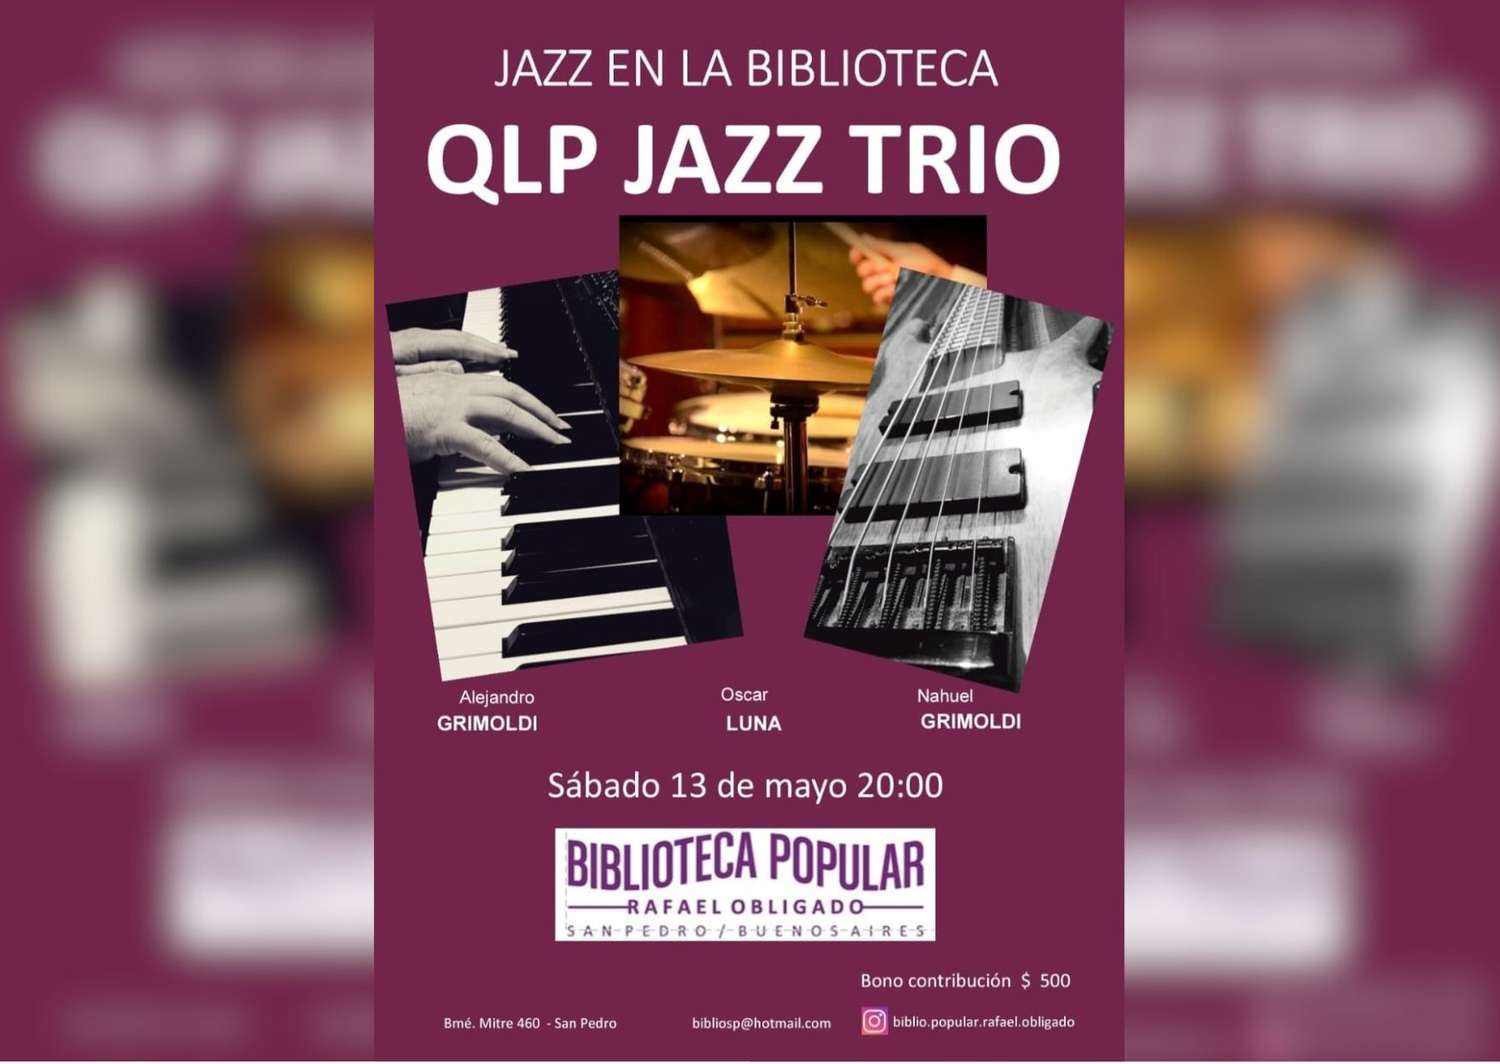 Noche de jazz en la biblioteca: se presenta QLP Jazz Trío